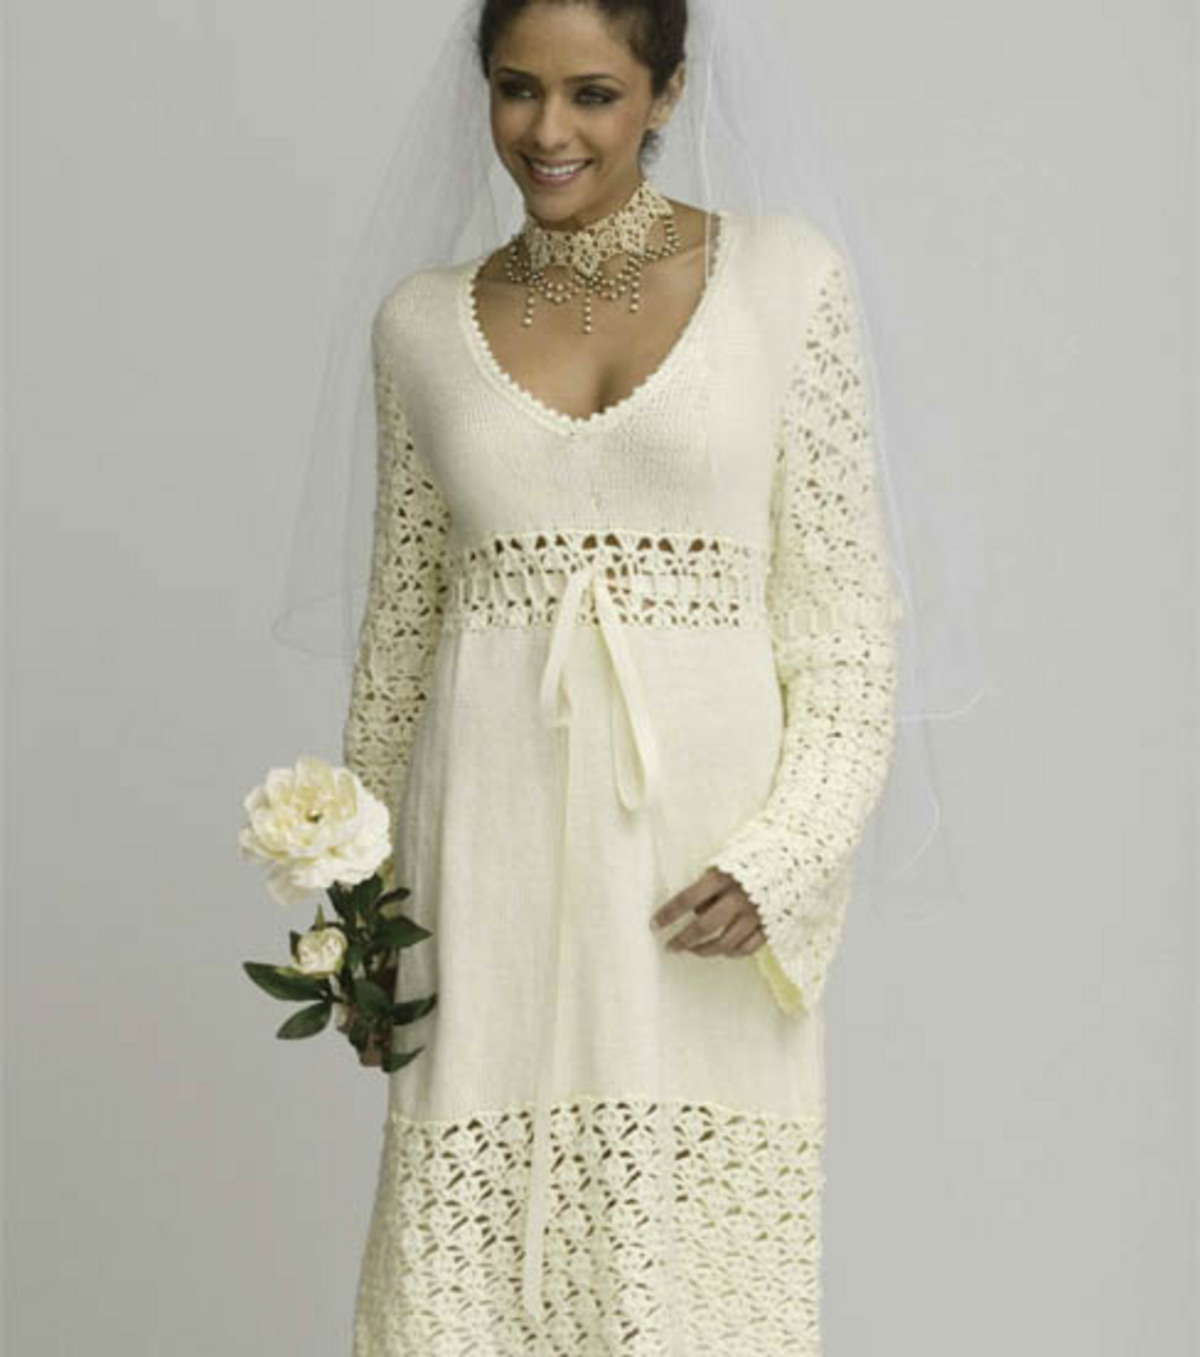 Crochet Dress Pattern Free Crochet Wedding Dress Patterns And Wedding Accessories To Crochet